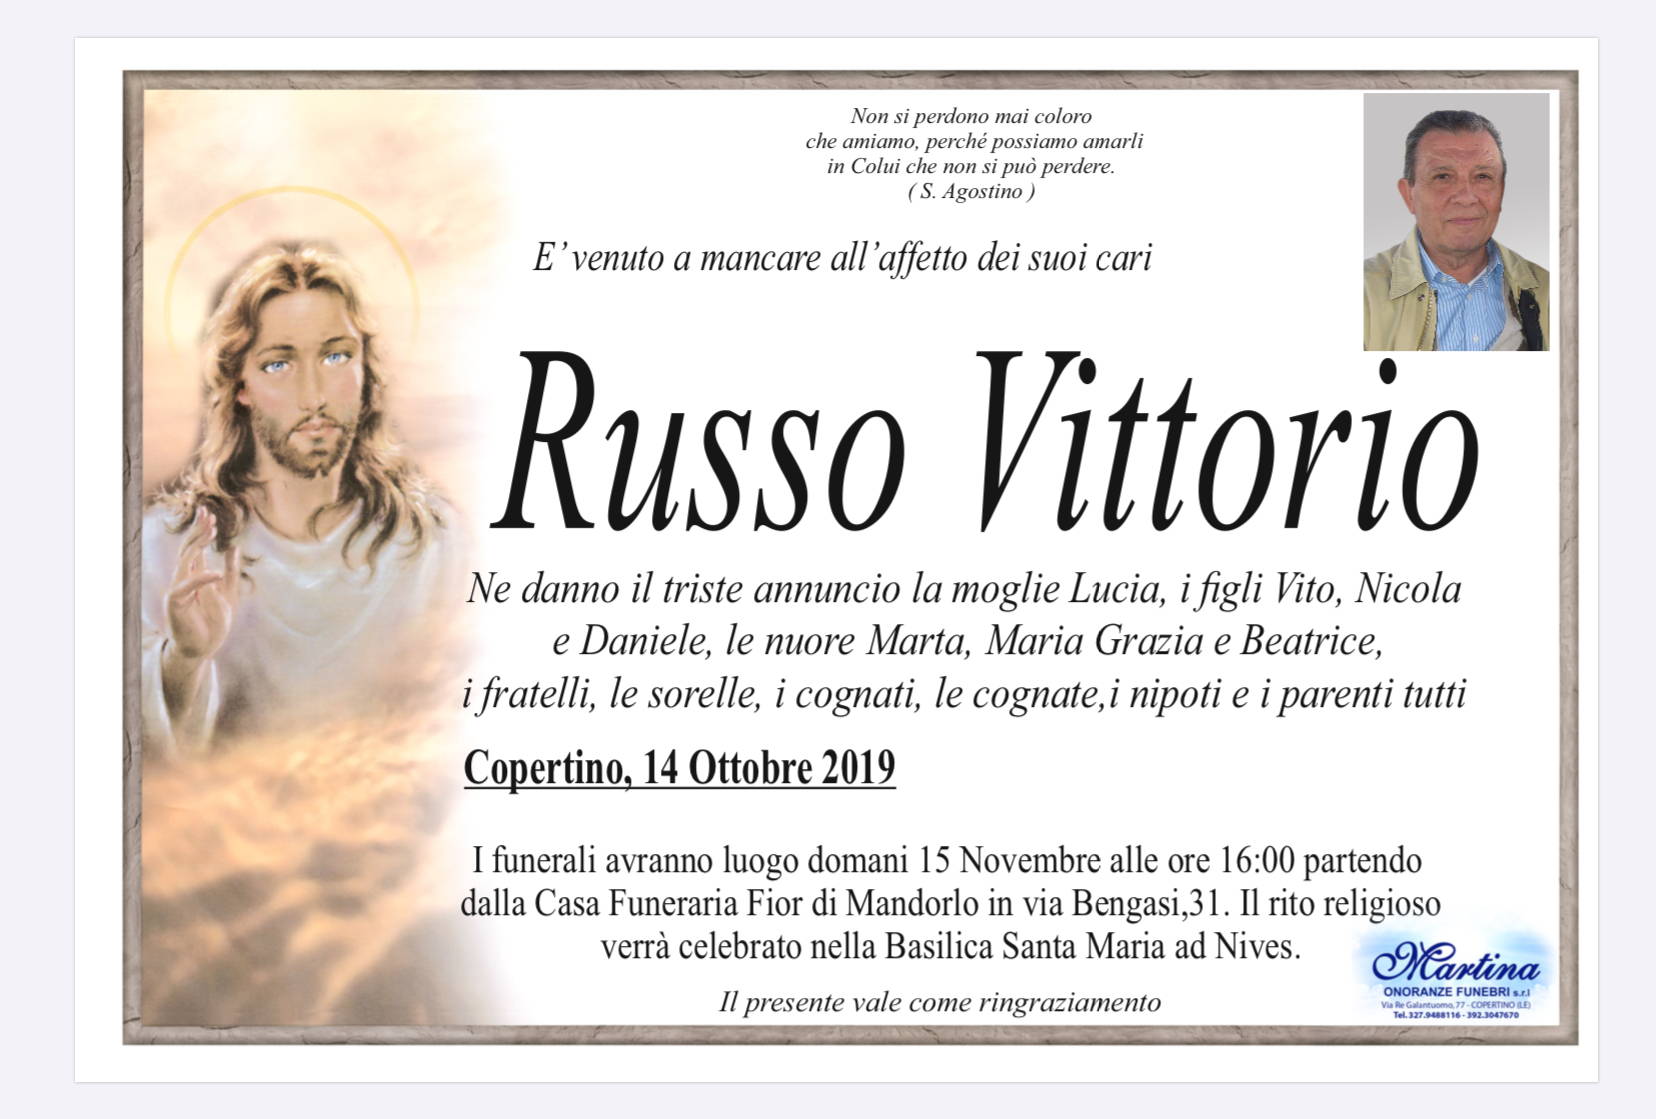 Vittorio Russo